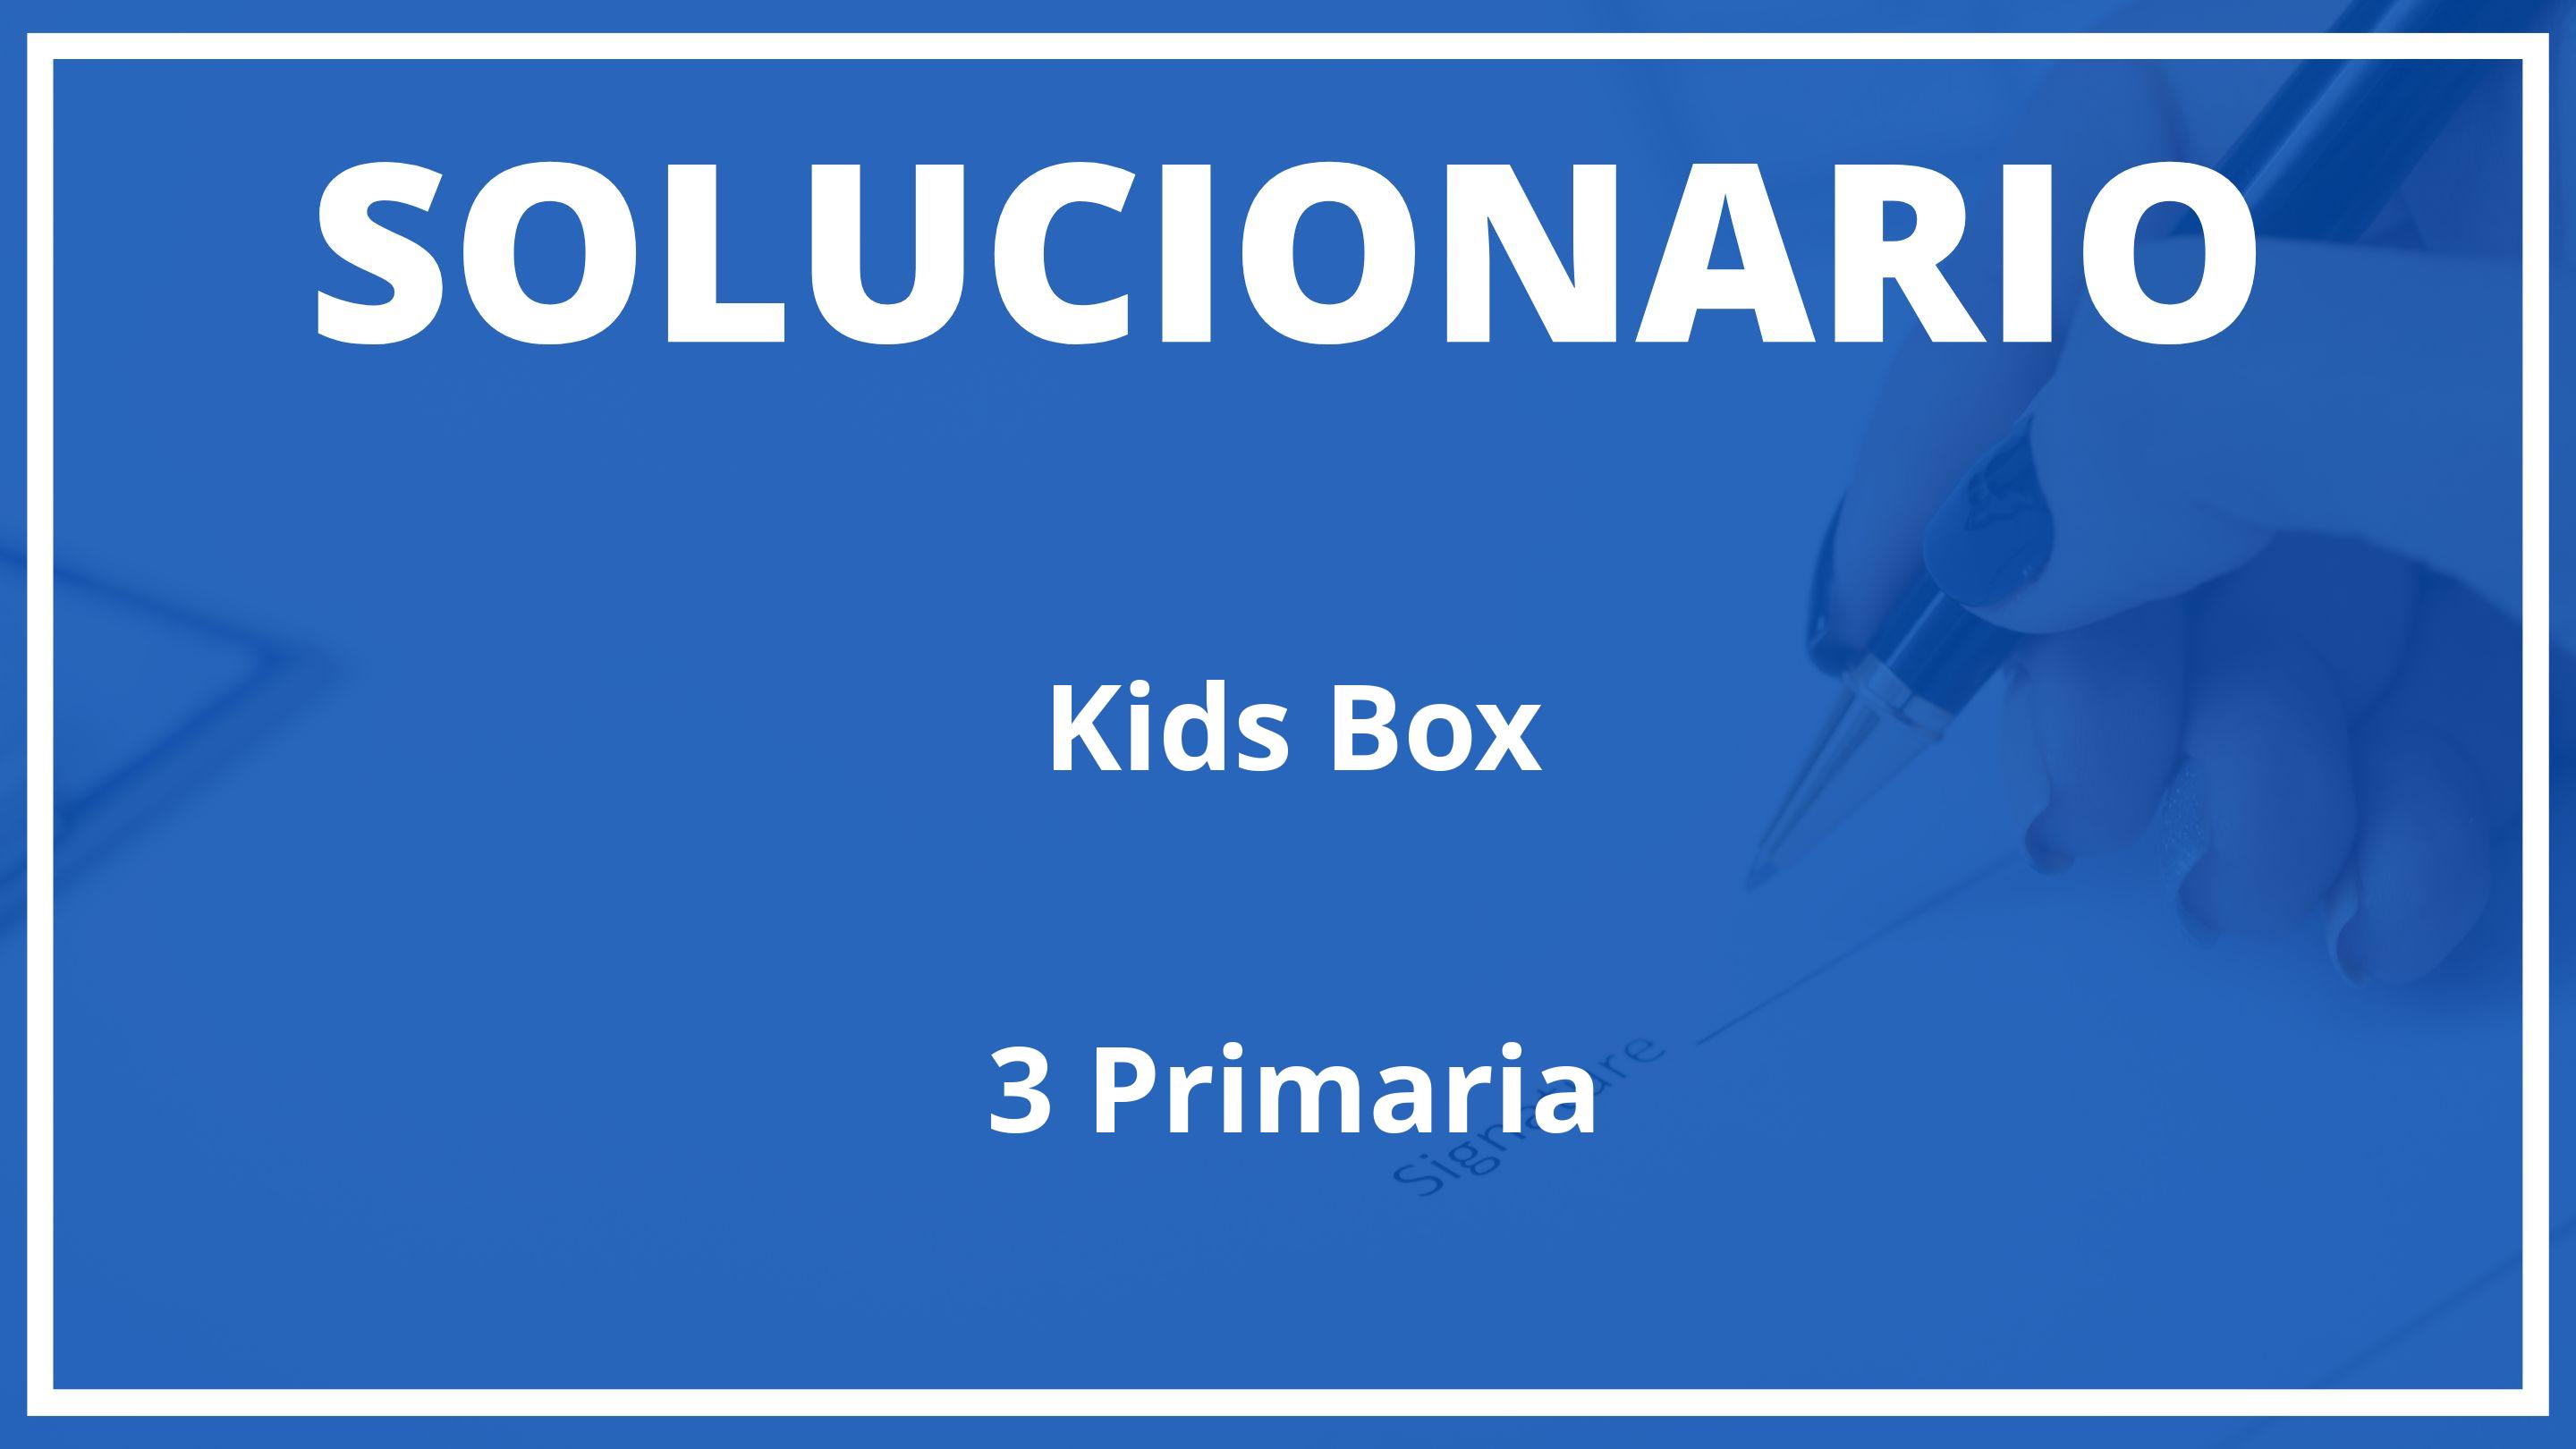 Solucionario Kids Box Cambridge 3 Primaria